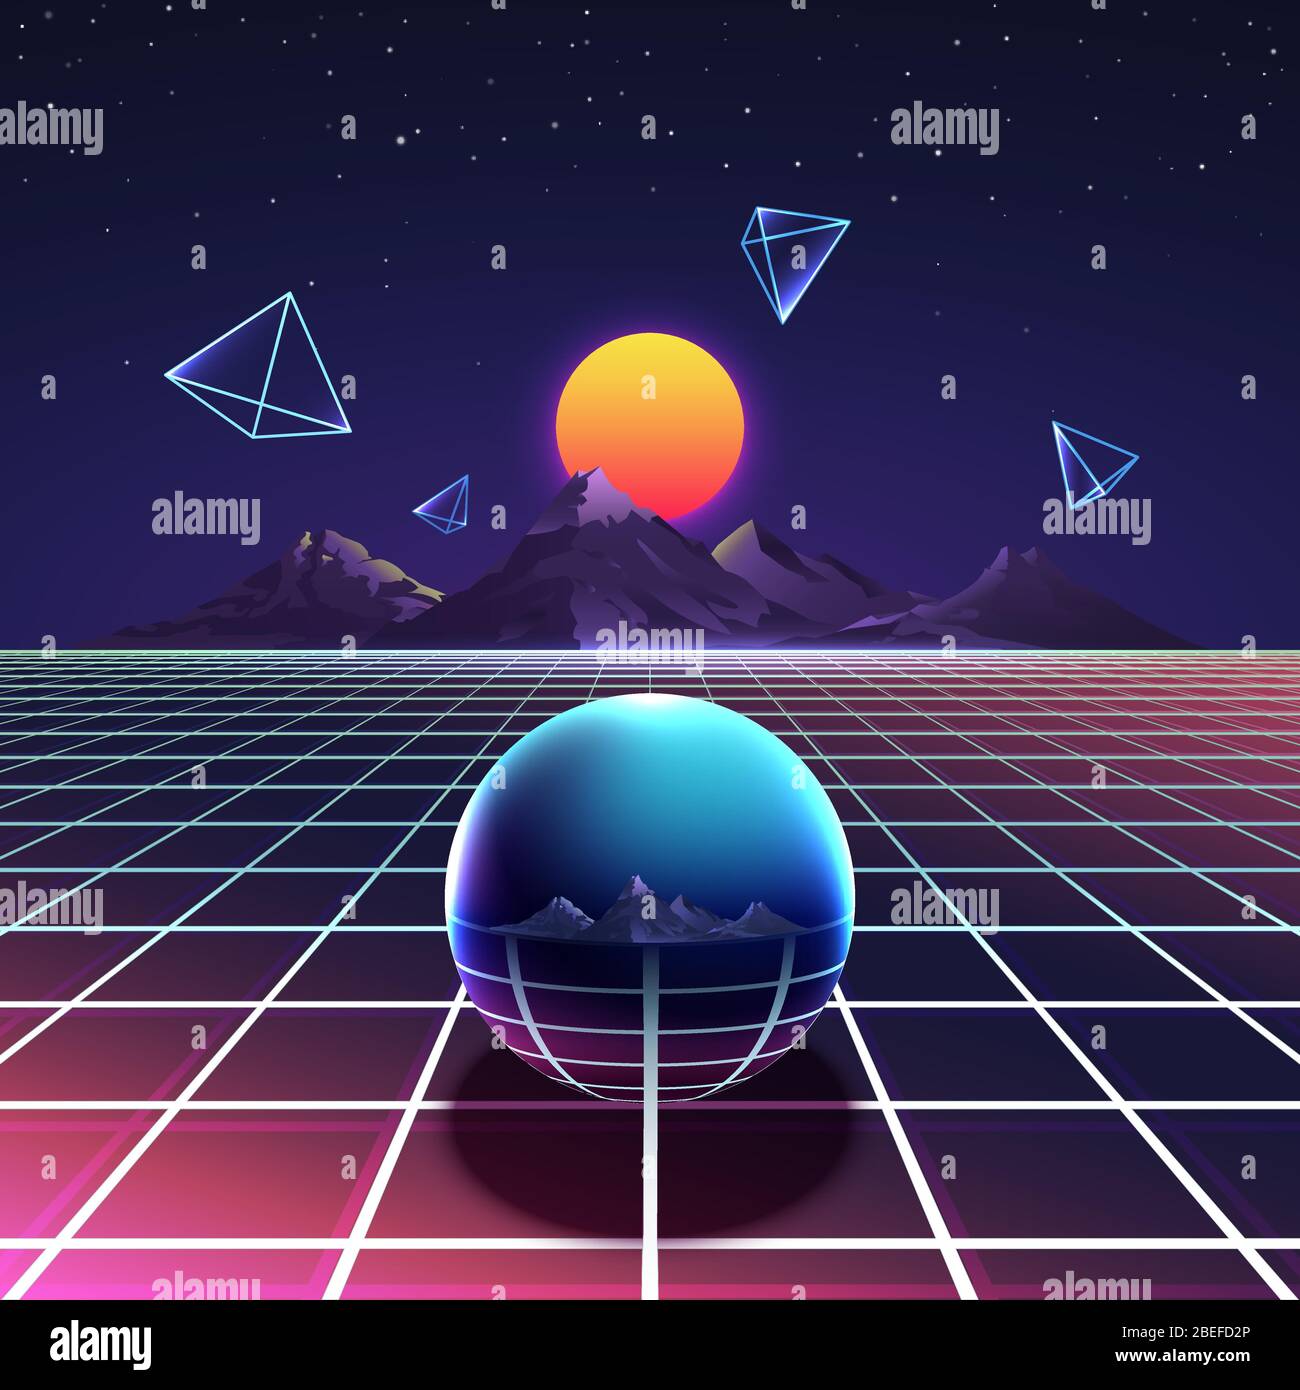 Retro vibrante futuristico synth notte poster vettoriale in stile nostalgia anni '80 con montagne, piramidi astratte e sfera metallica. Cyberspace digitale e griglia di illuminazione brillante superficie illustrazione Illustrazione Vettoriale